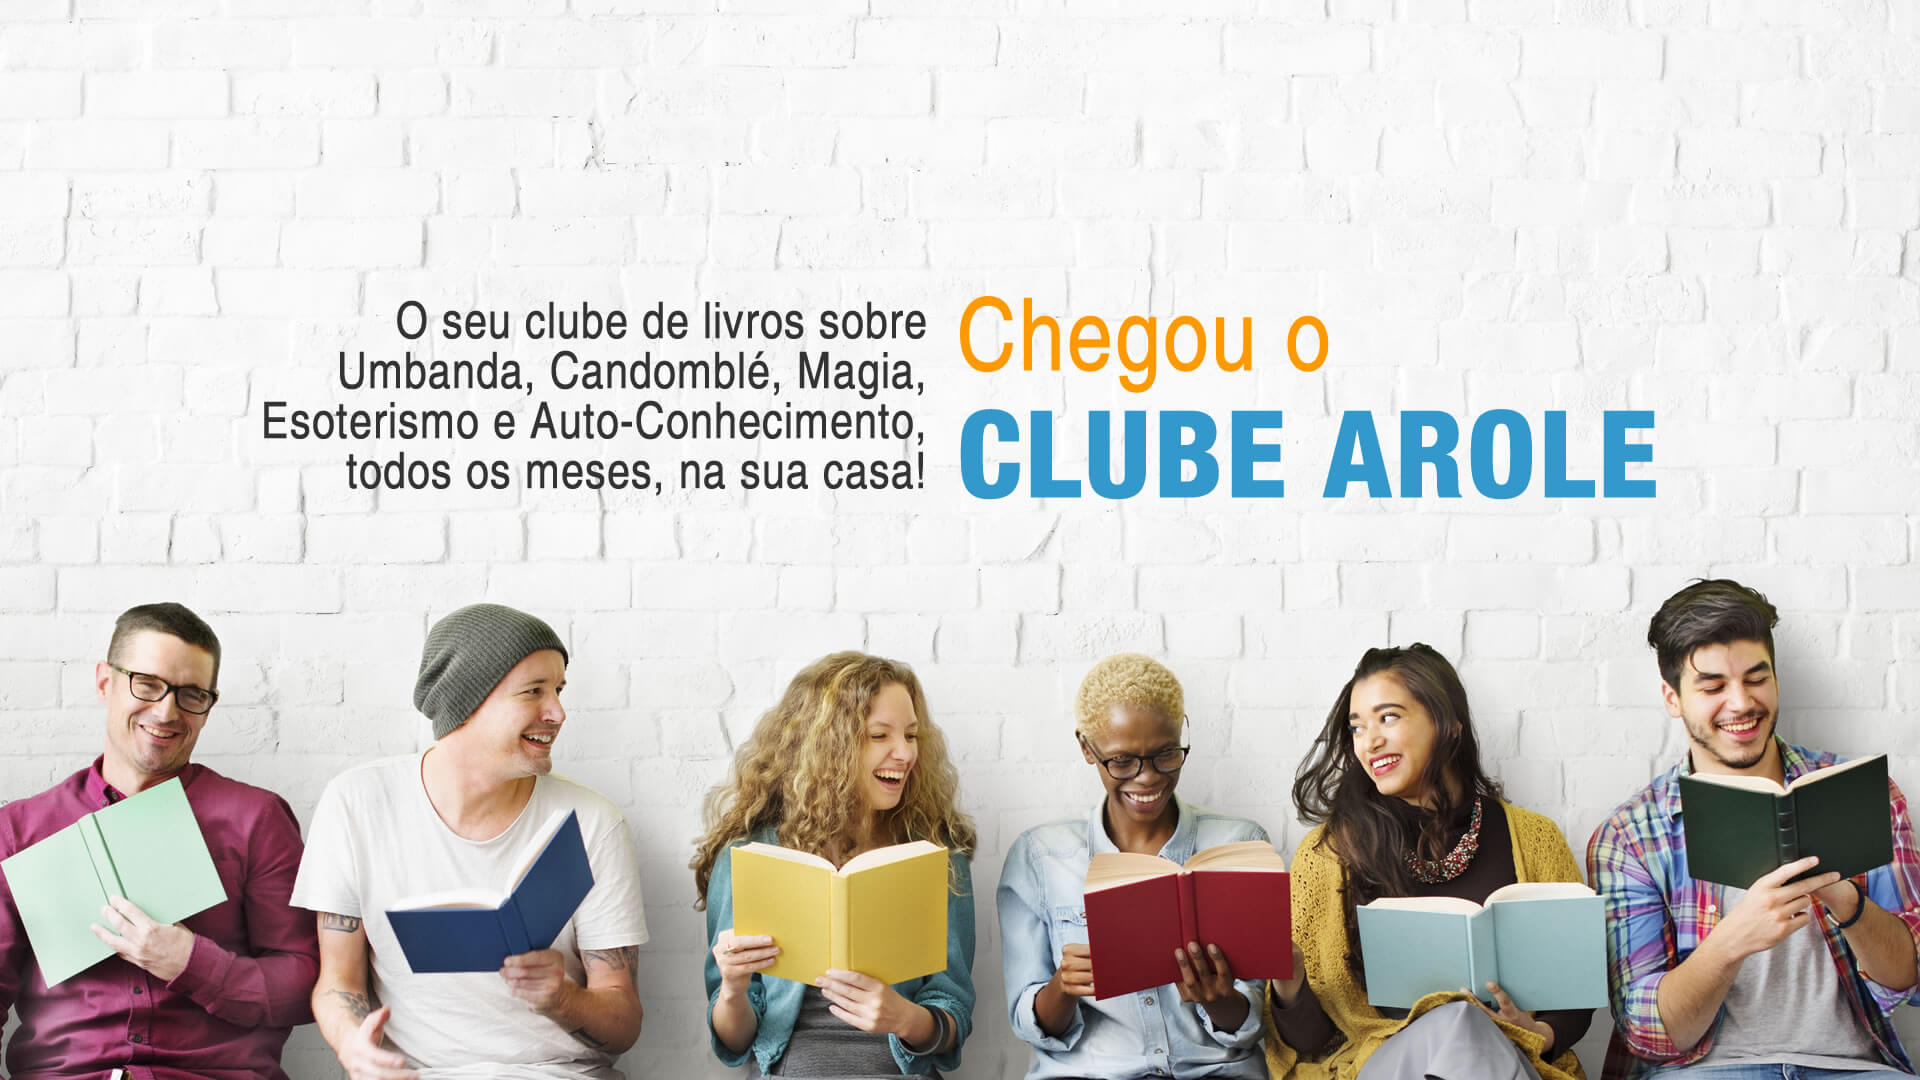 A Magia das Folhas | O Clube Arole, lançado no último 30 de abril, reunirá obras da Editora e outras publicações do segmento selecionadas por autores e curadores